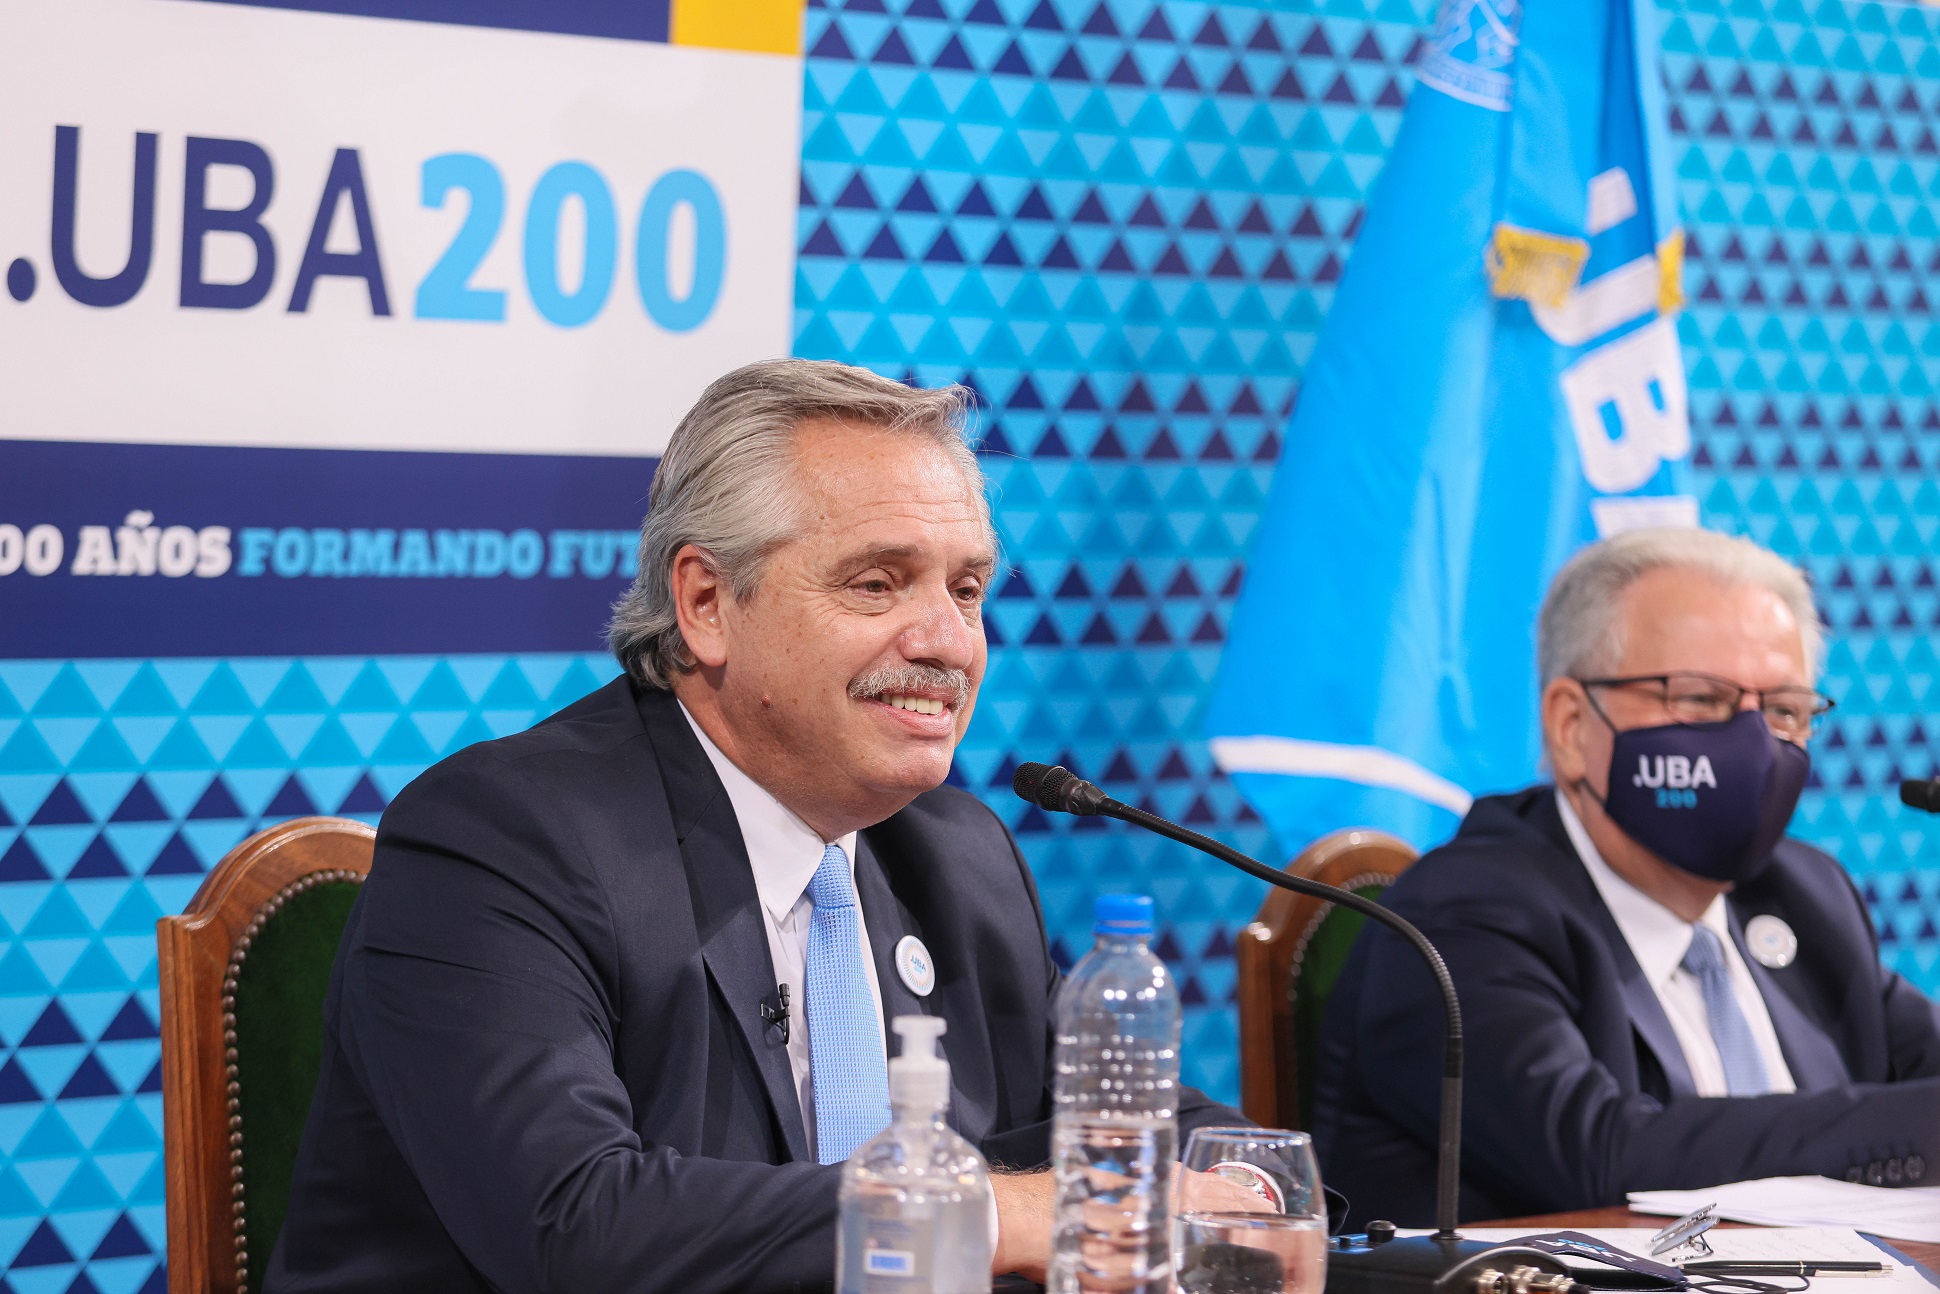 Bicentenario de la Universidad de Buenos Aires: “La UBA es igualdad”, dijo el Presidente